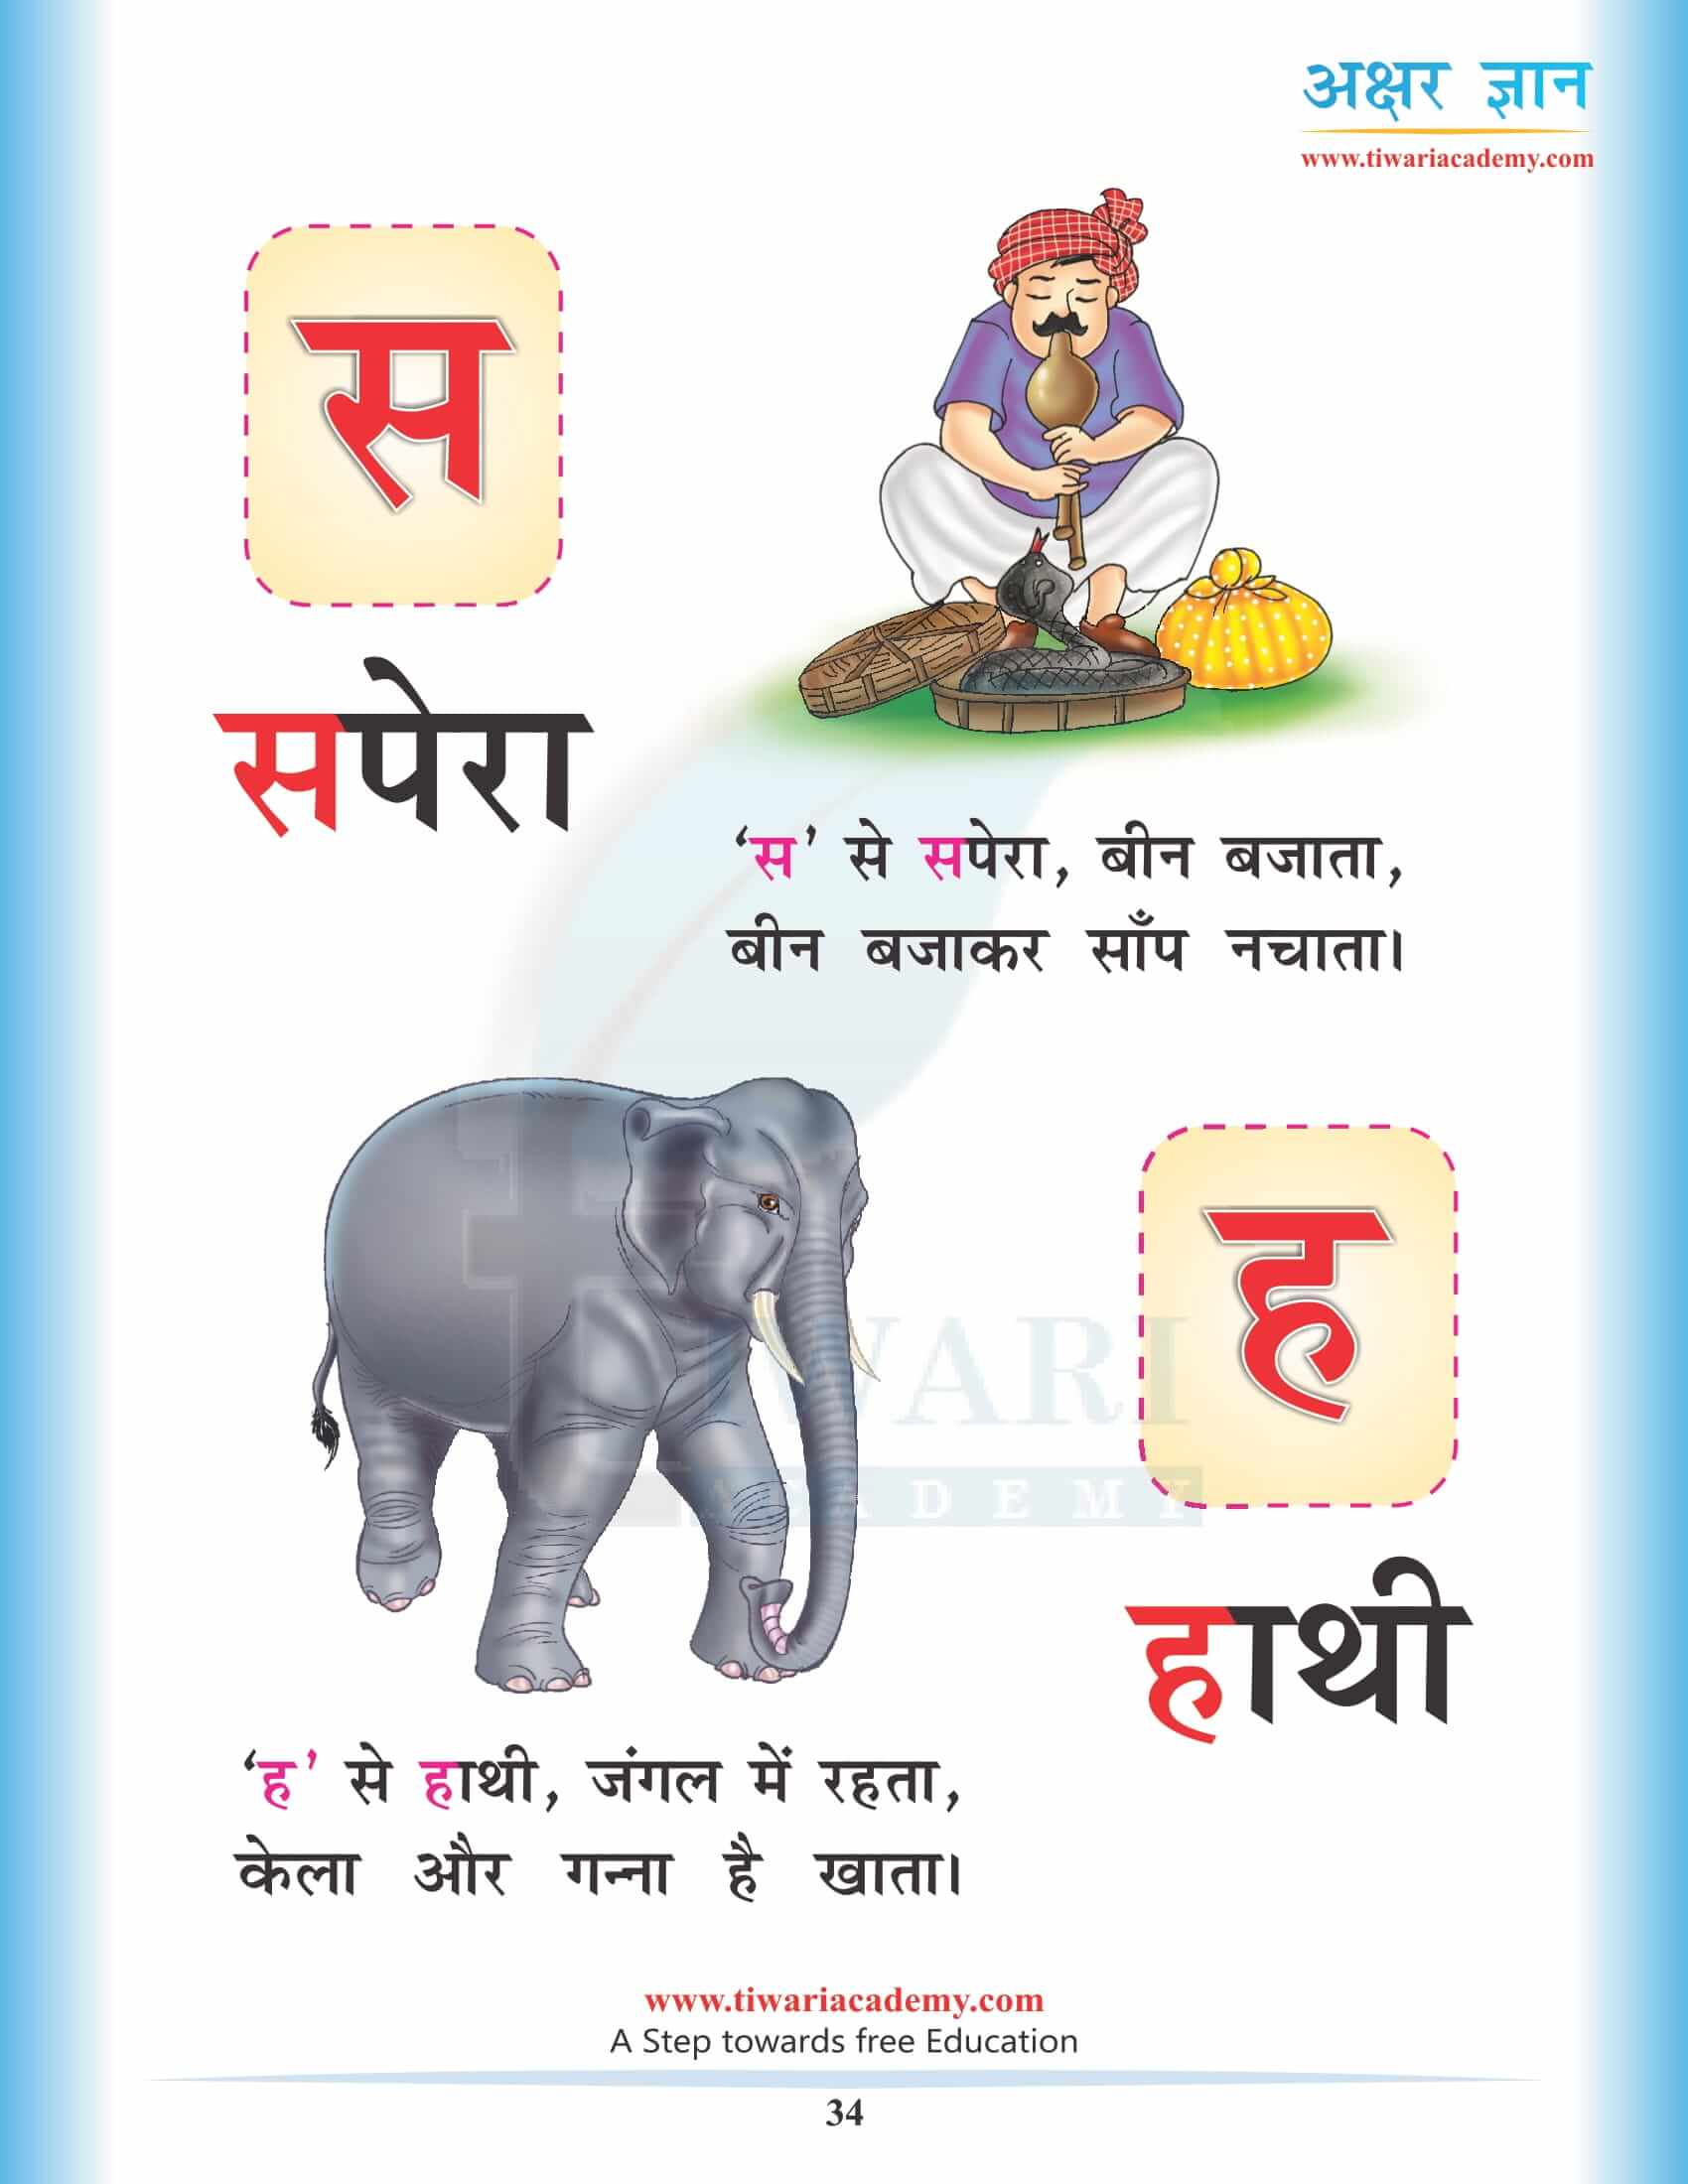 Hindi Alphabets s ha